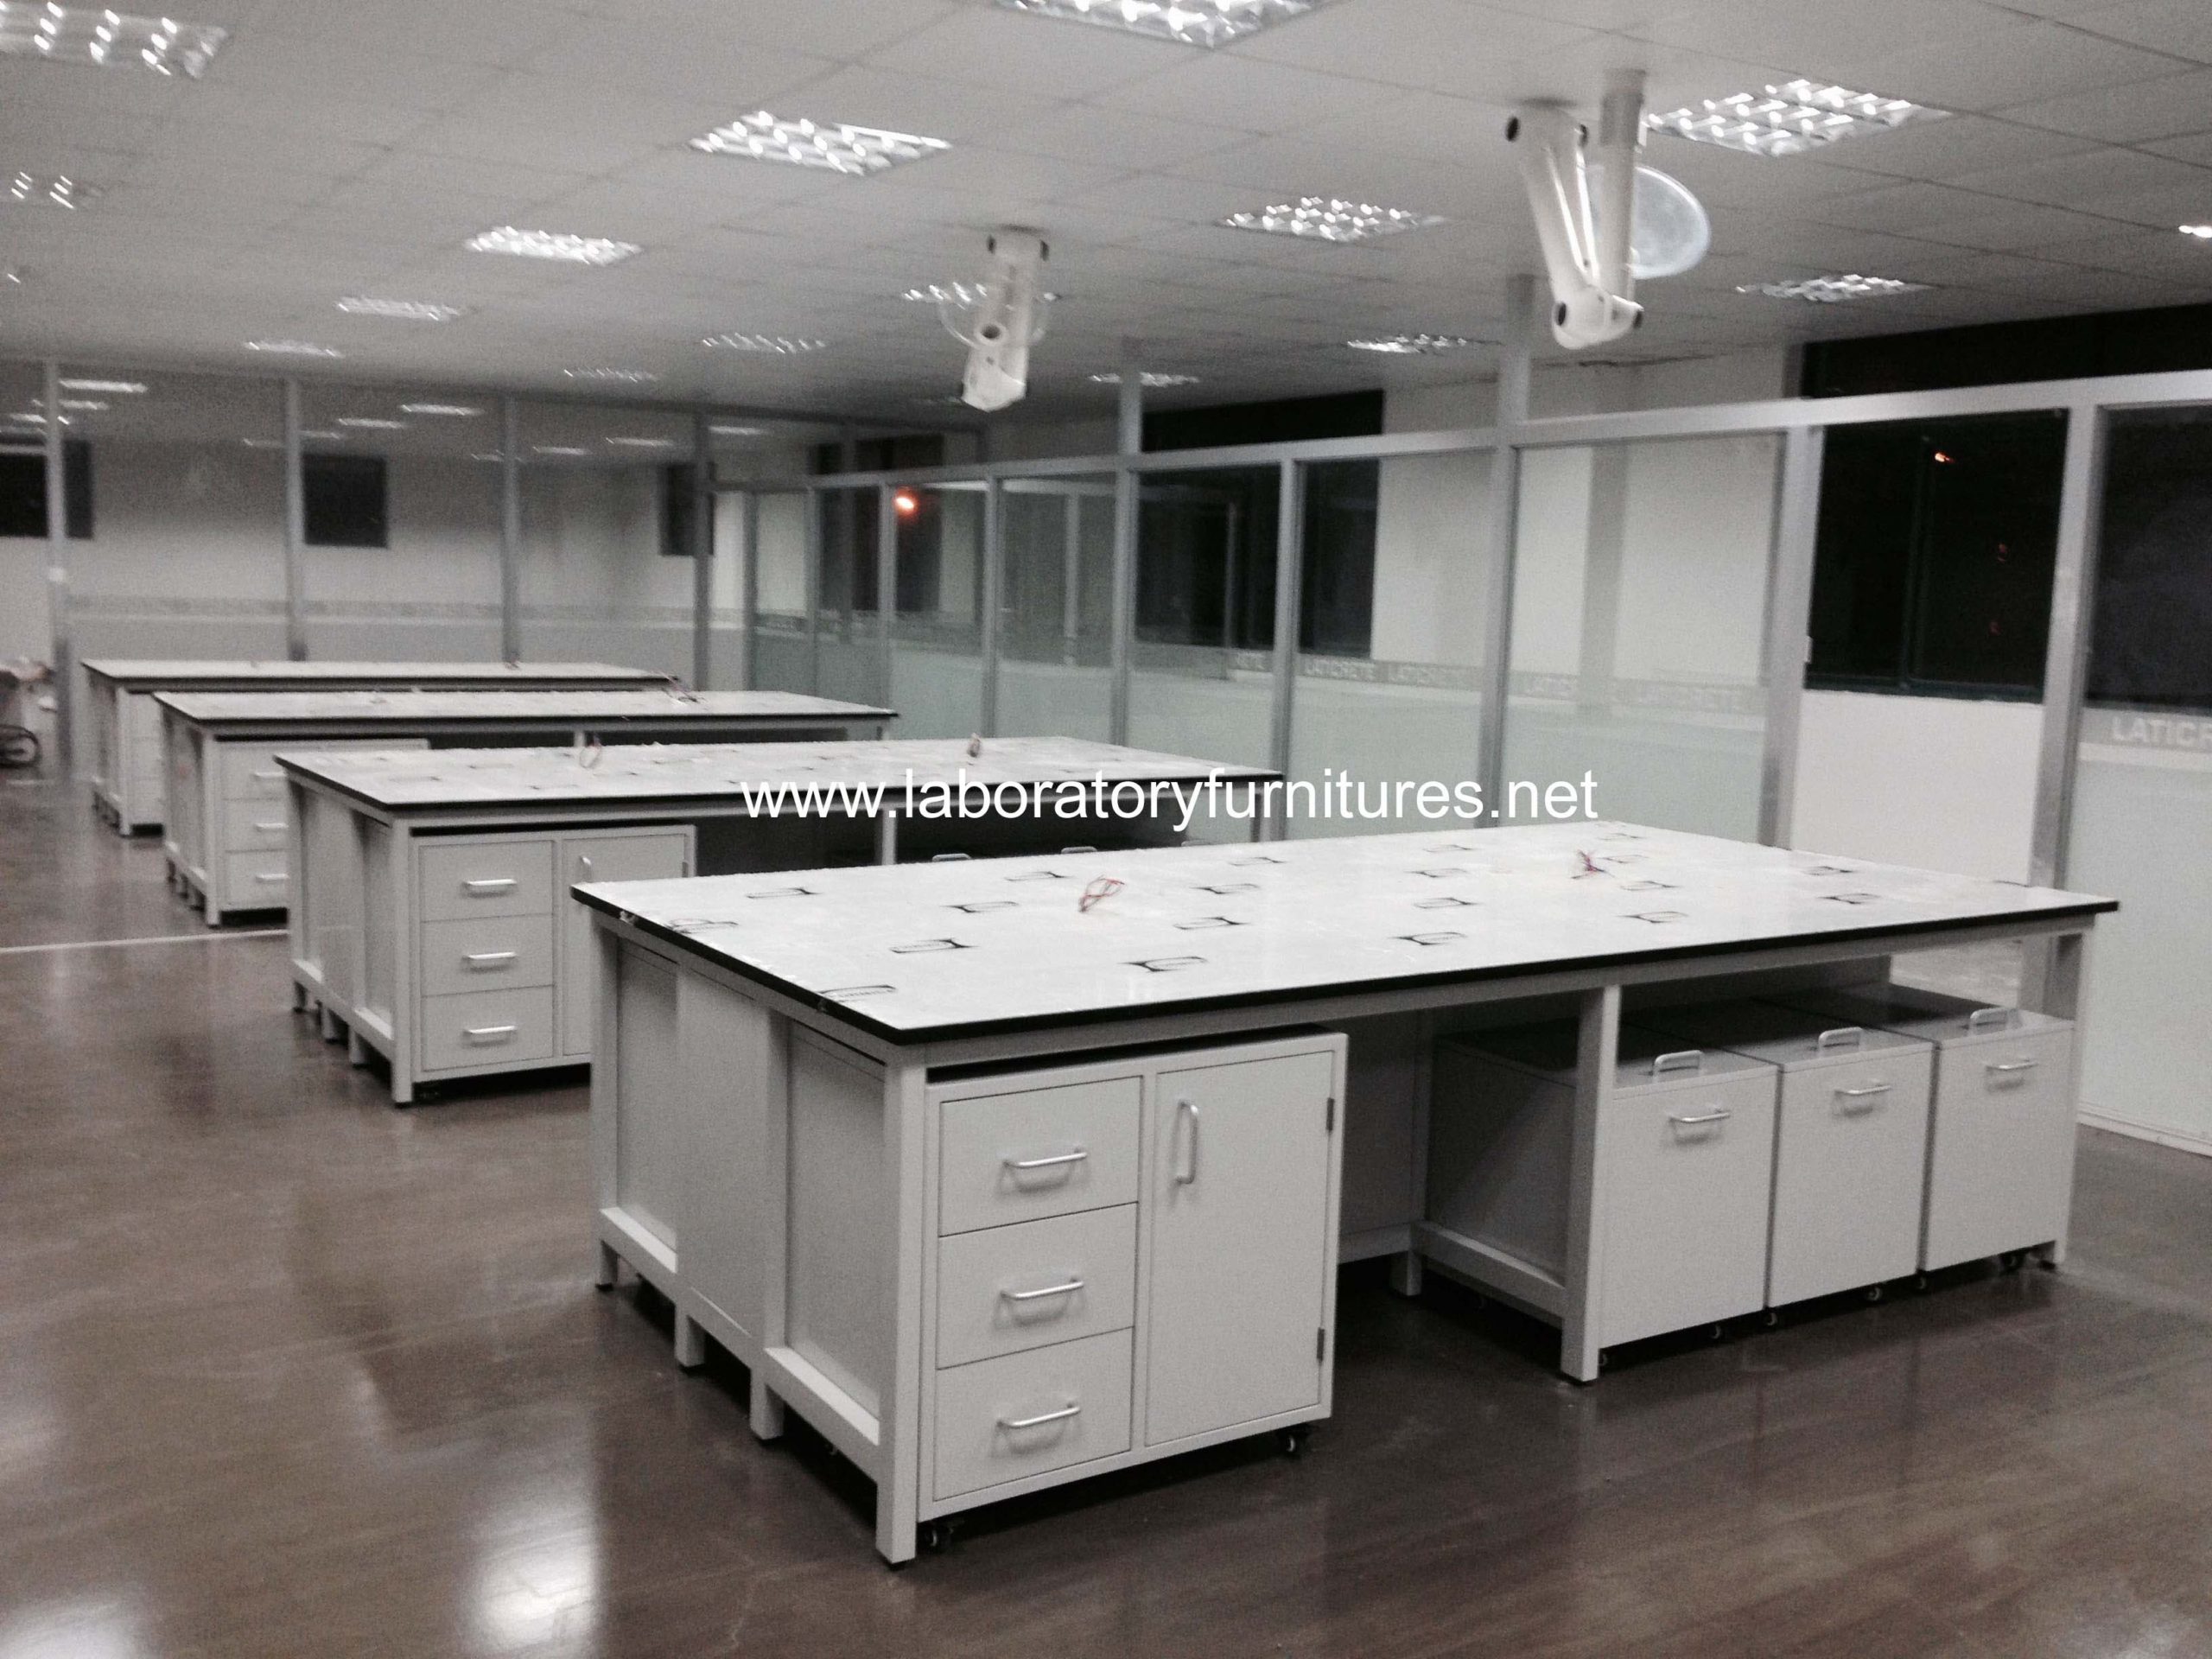 H-frame lab furniture